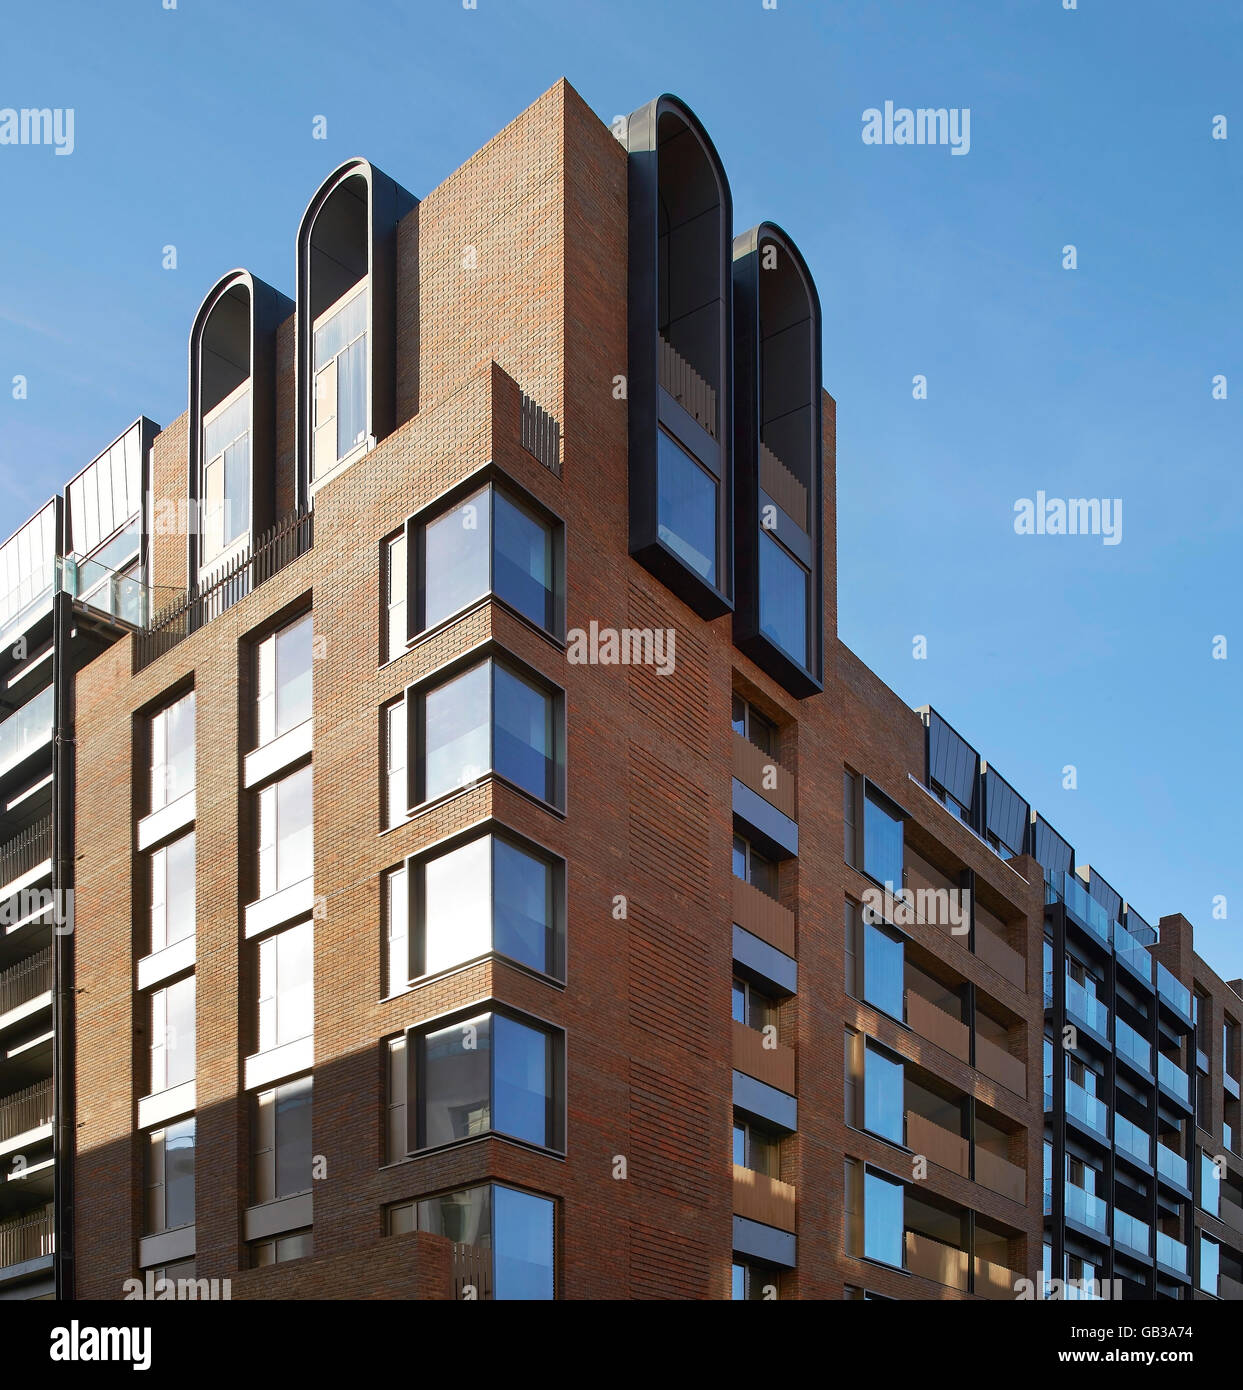 Ecke Höhe von rotem Backstein verkleidet Wohnblock. Fitzroy Place, London, Großbritannien. Architekt: Lifschutz Davidson Sandilands, 2015. Stockfoto